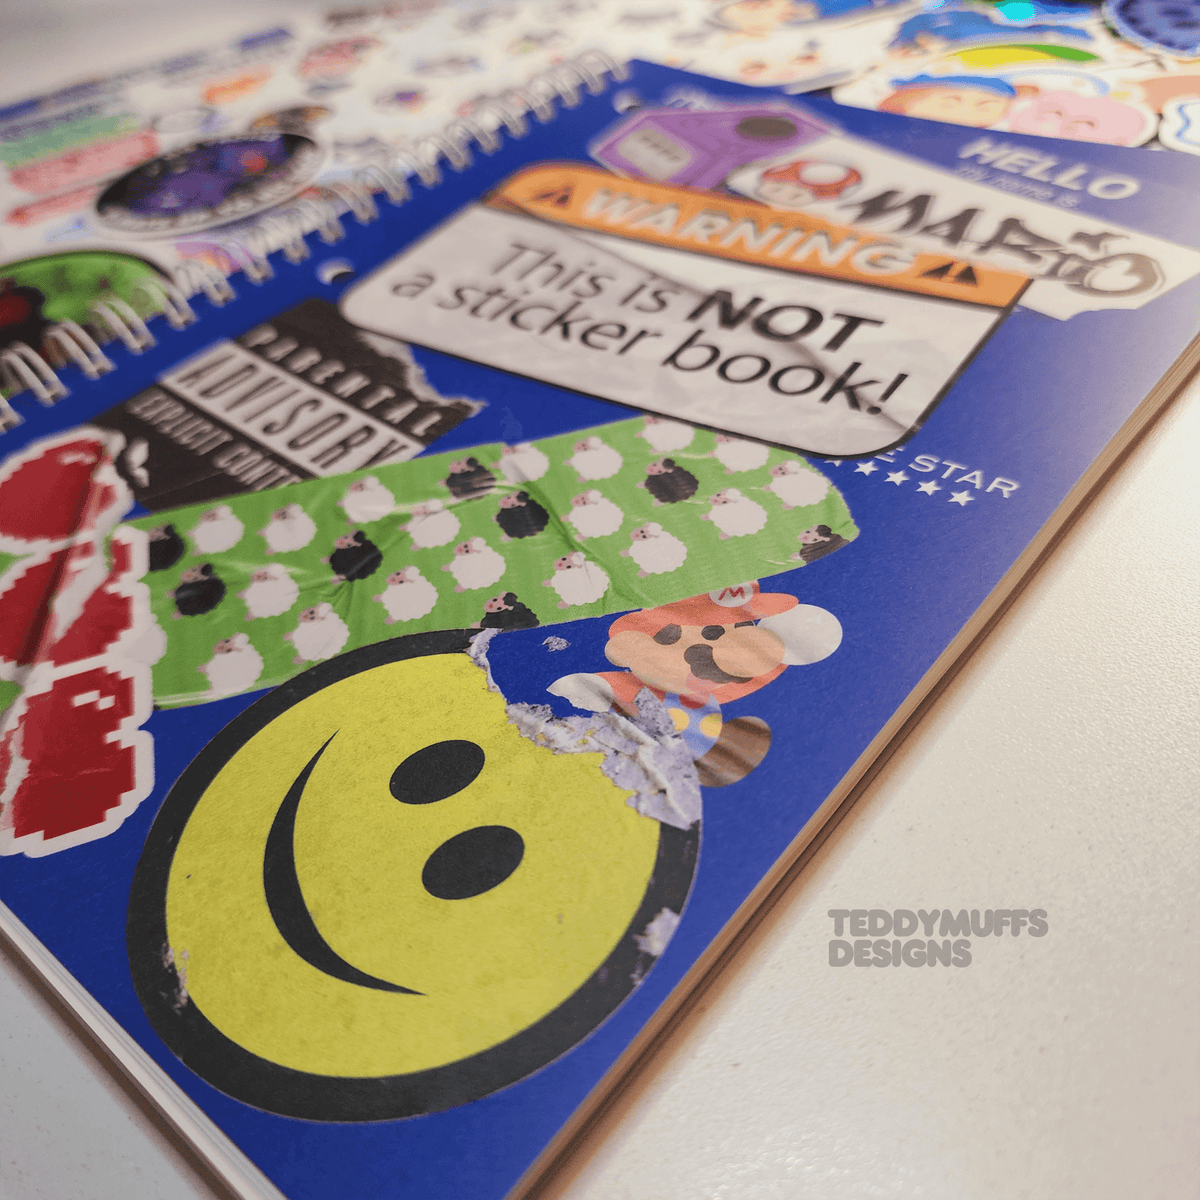 Sticker Bomb Sticker Book - Teddymuffs Designs